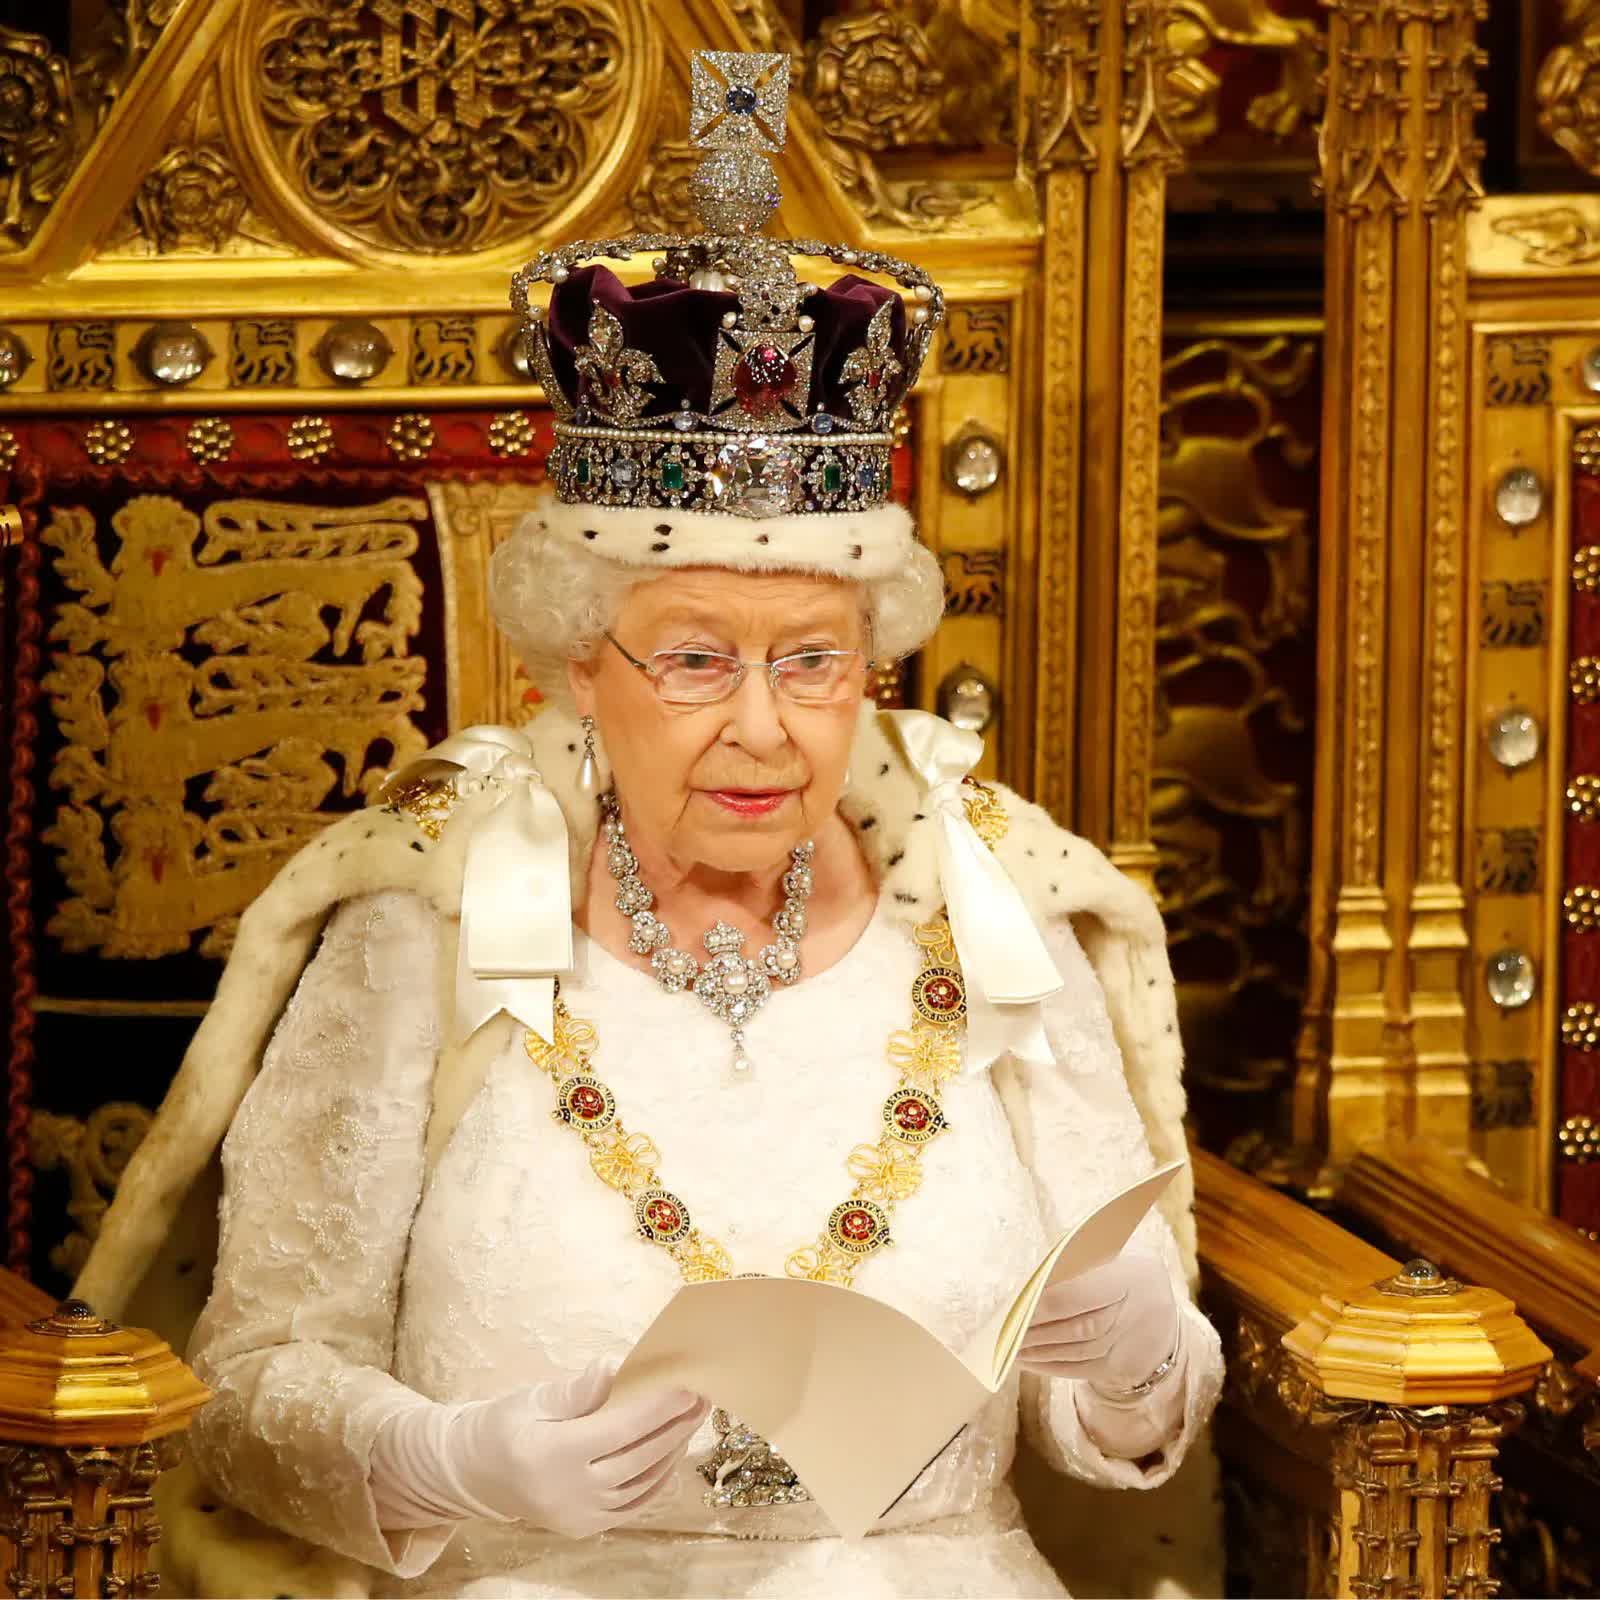 Nữ hoàng Elizabeth II băng hà: Một kỷ nguyên lịch sử khép lại - Ảnh 2.